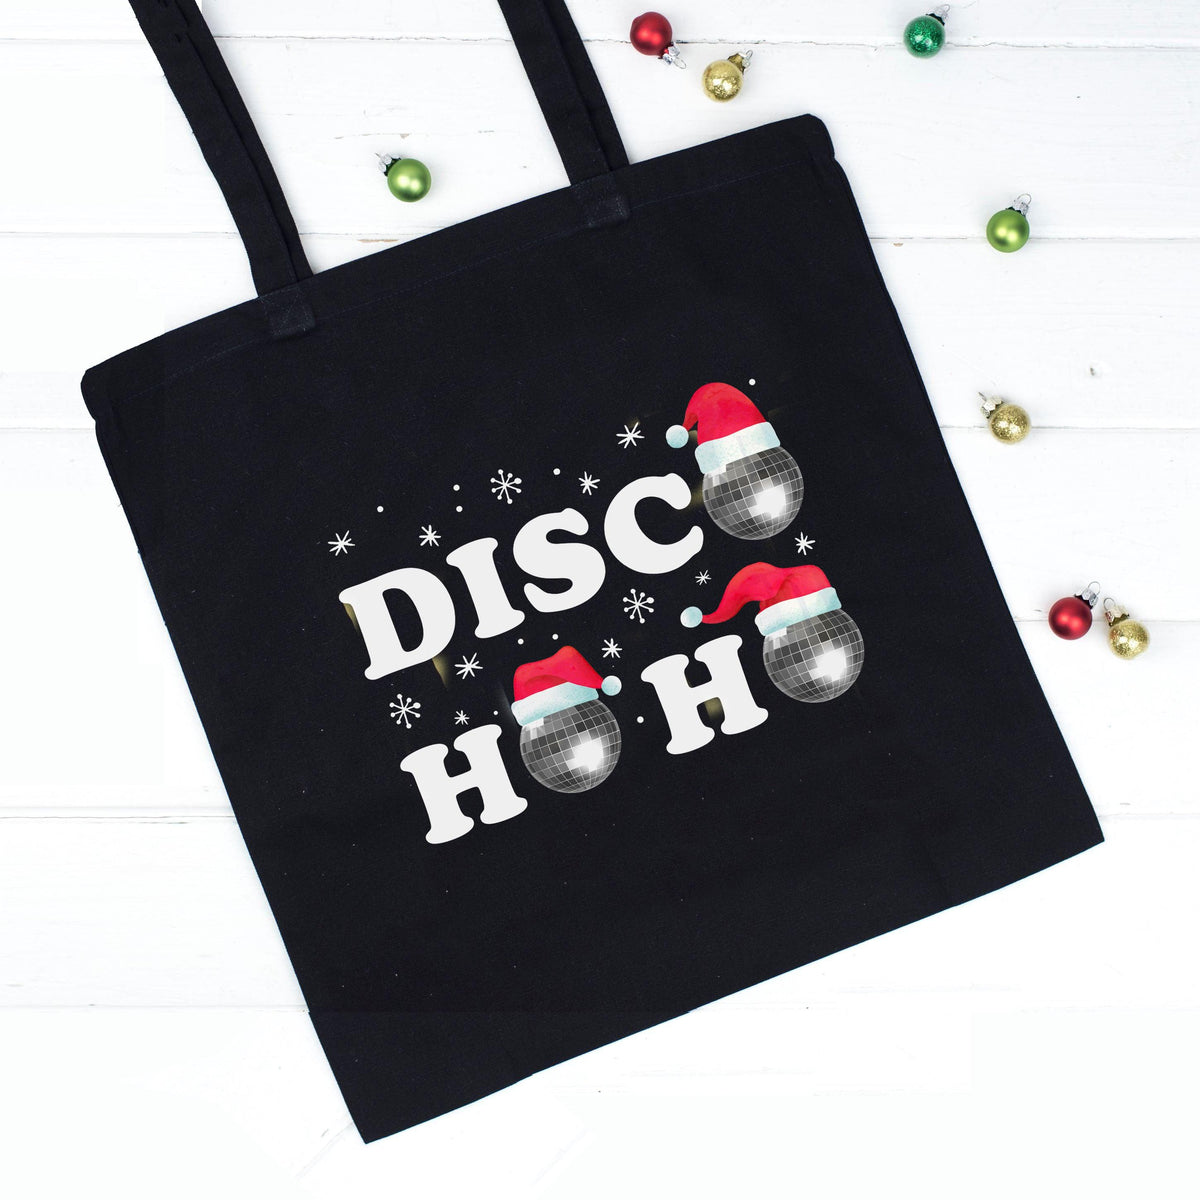 'Disco-HOHO' Christmas Tote Bag - Of Life & Lemons®